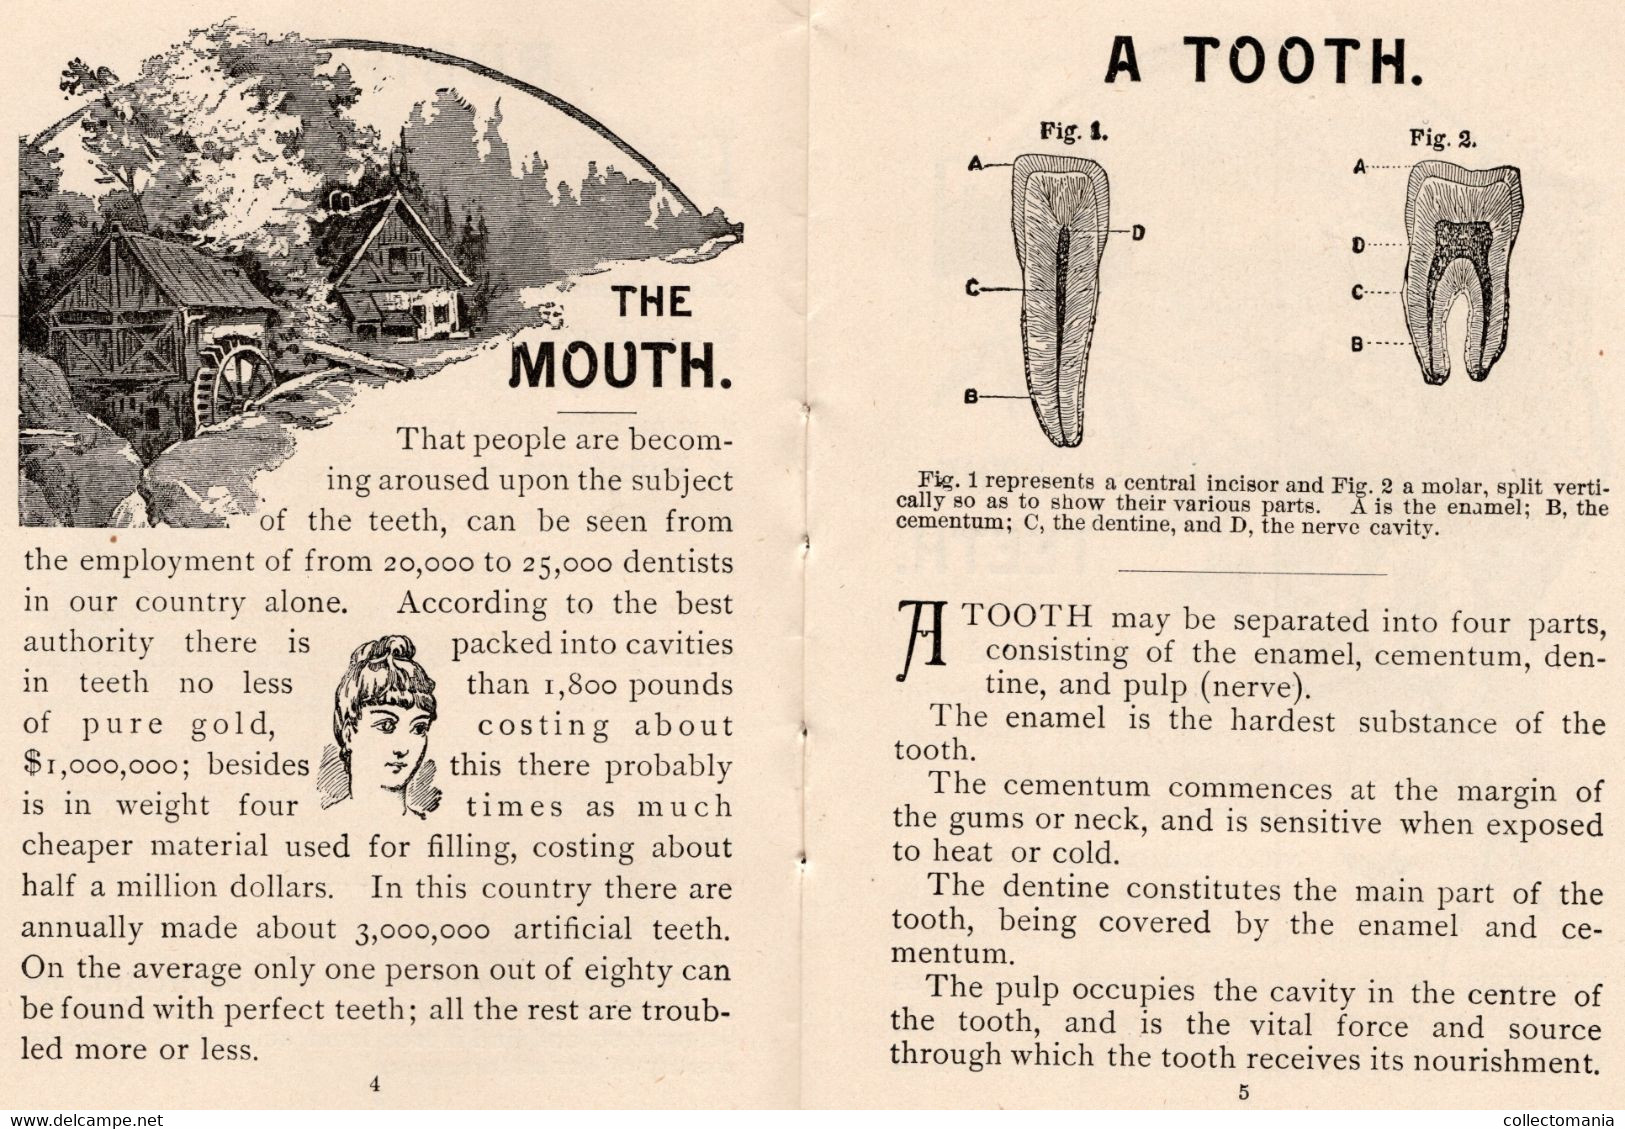 1 Carnet Booklet  The Teeth  E.W.Hoyt  & C° 1891 Rubifoam Tooth Powder Dentist Dentifrice - Vintage (until 1960)